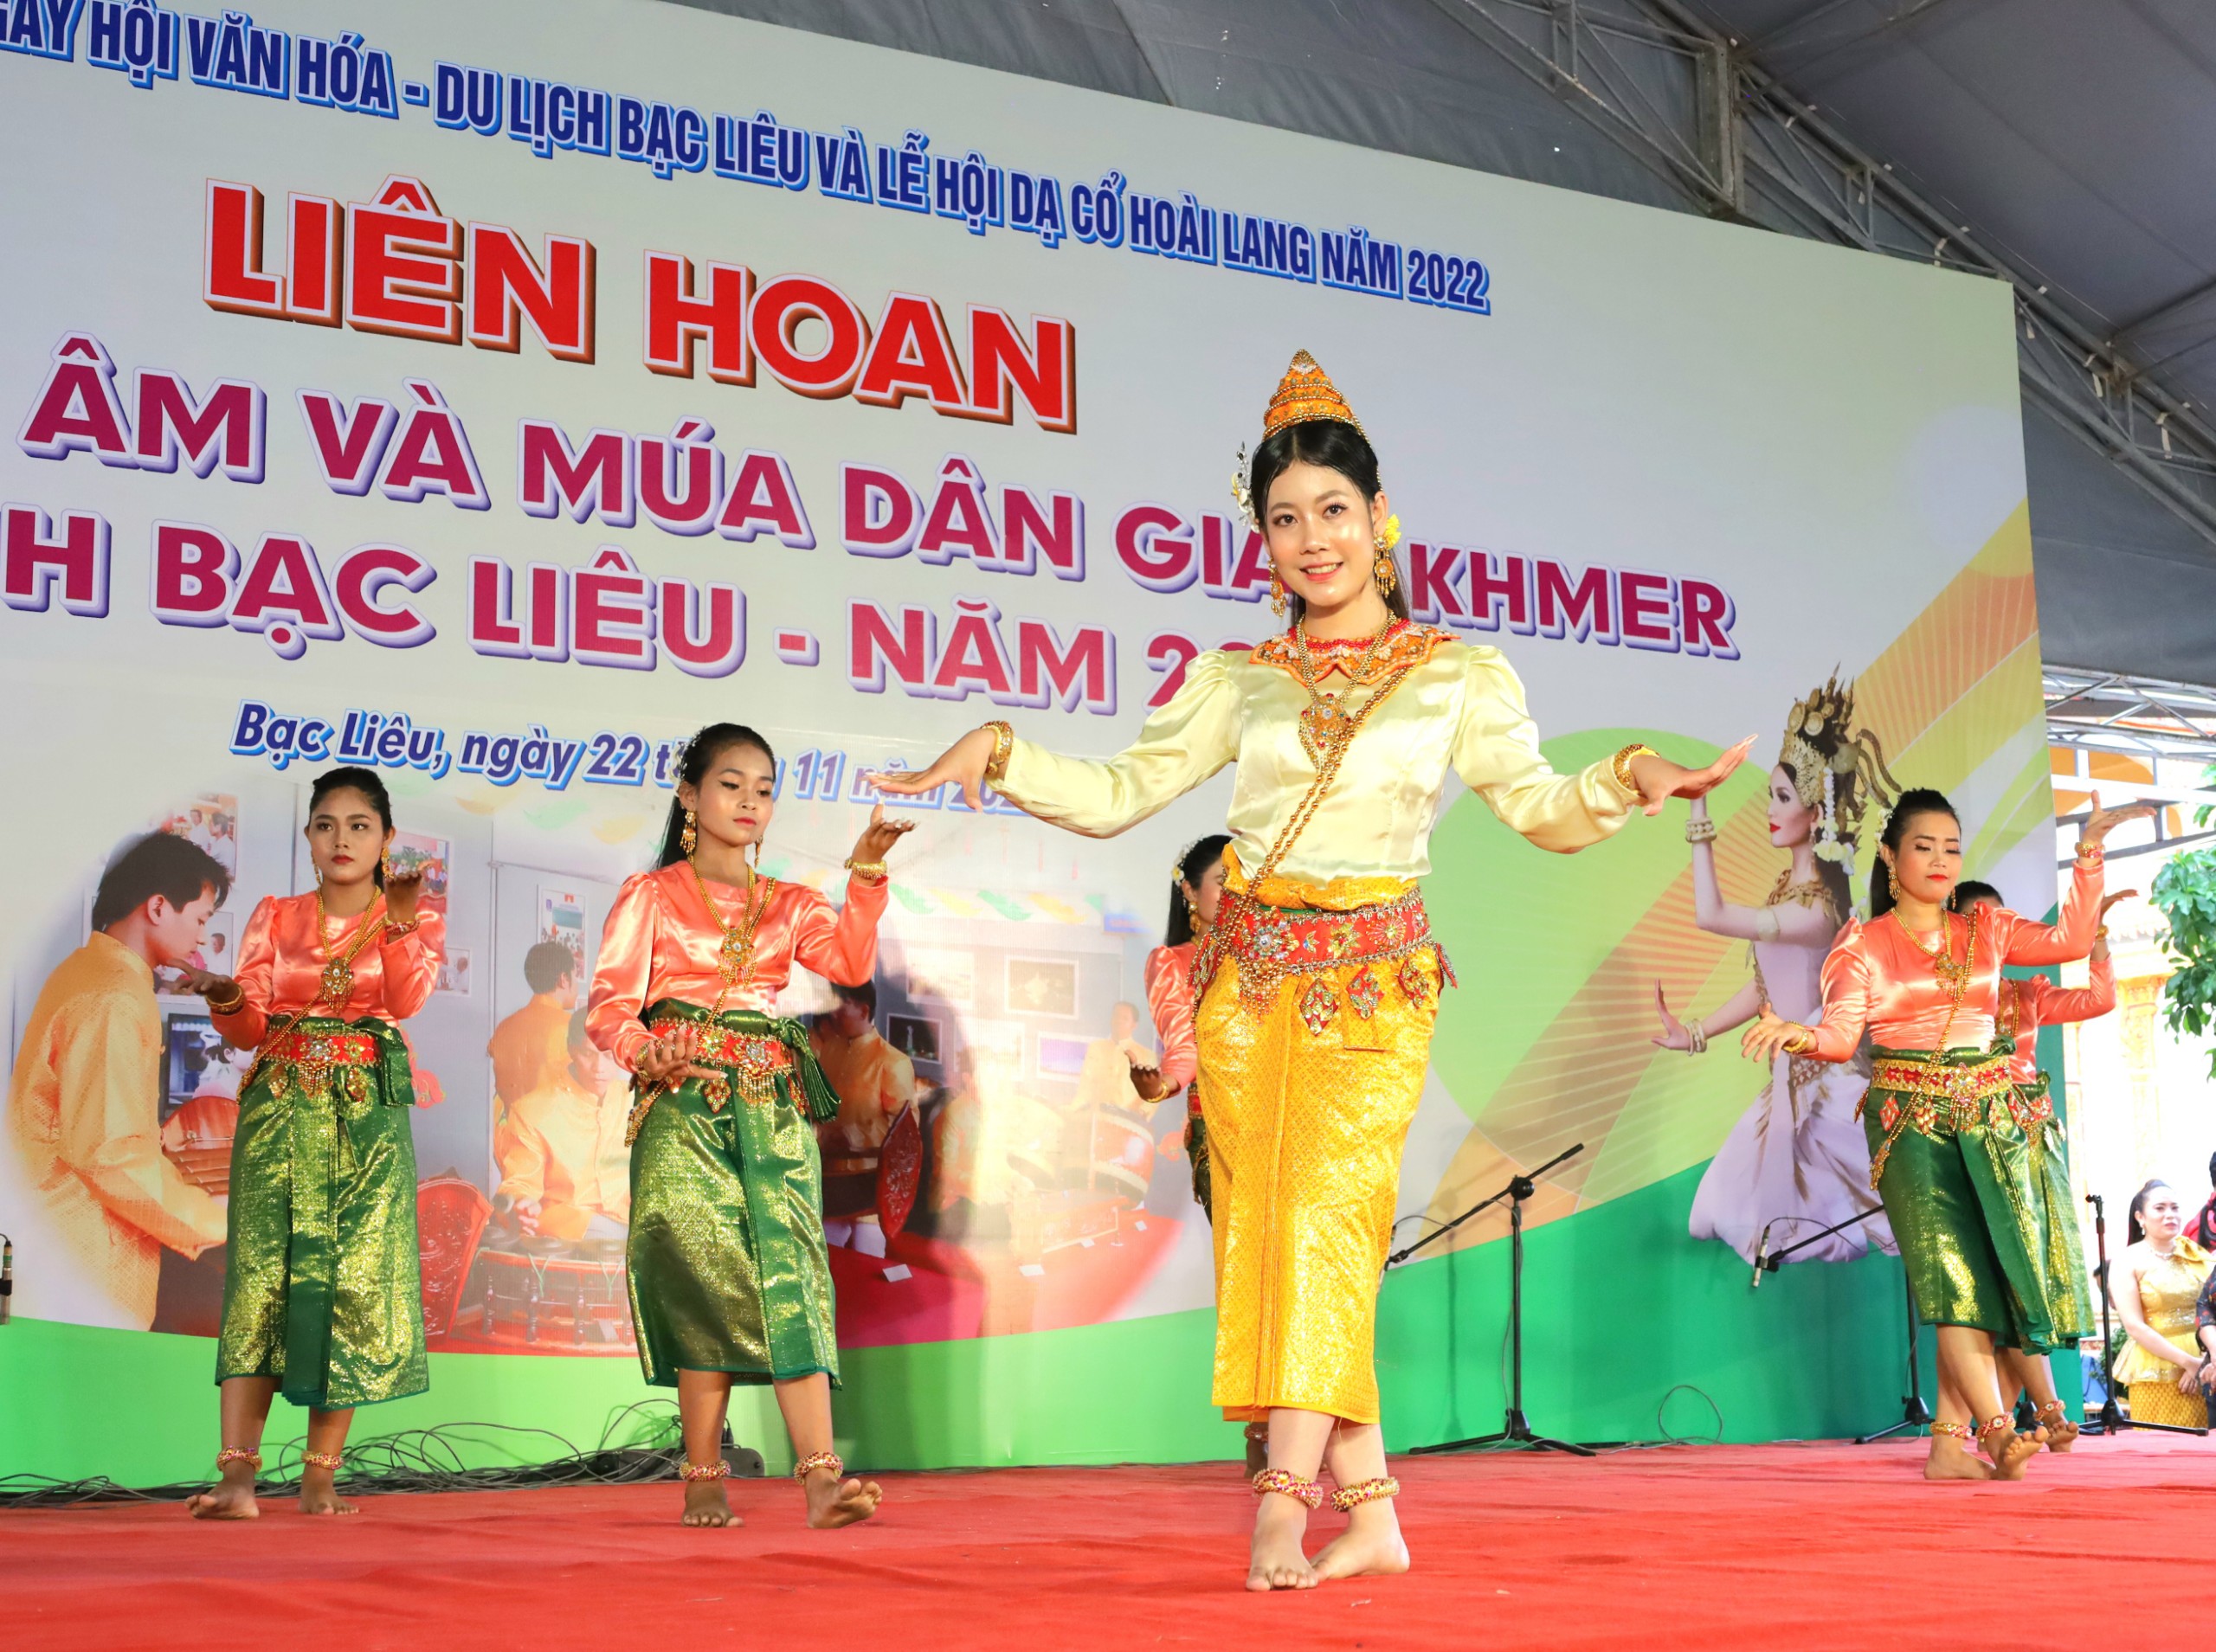 Nghệ thuật múa dân gian là sản phẩm tinh thần độc đáo không thể thiếu trong các dịp lễ, Tết, đám tiệc, đám phước của đồng bào Khmer.